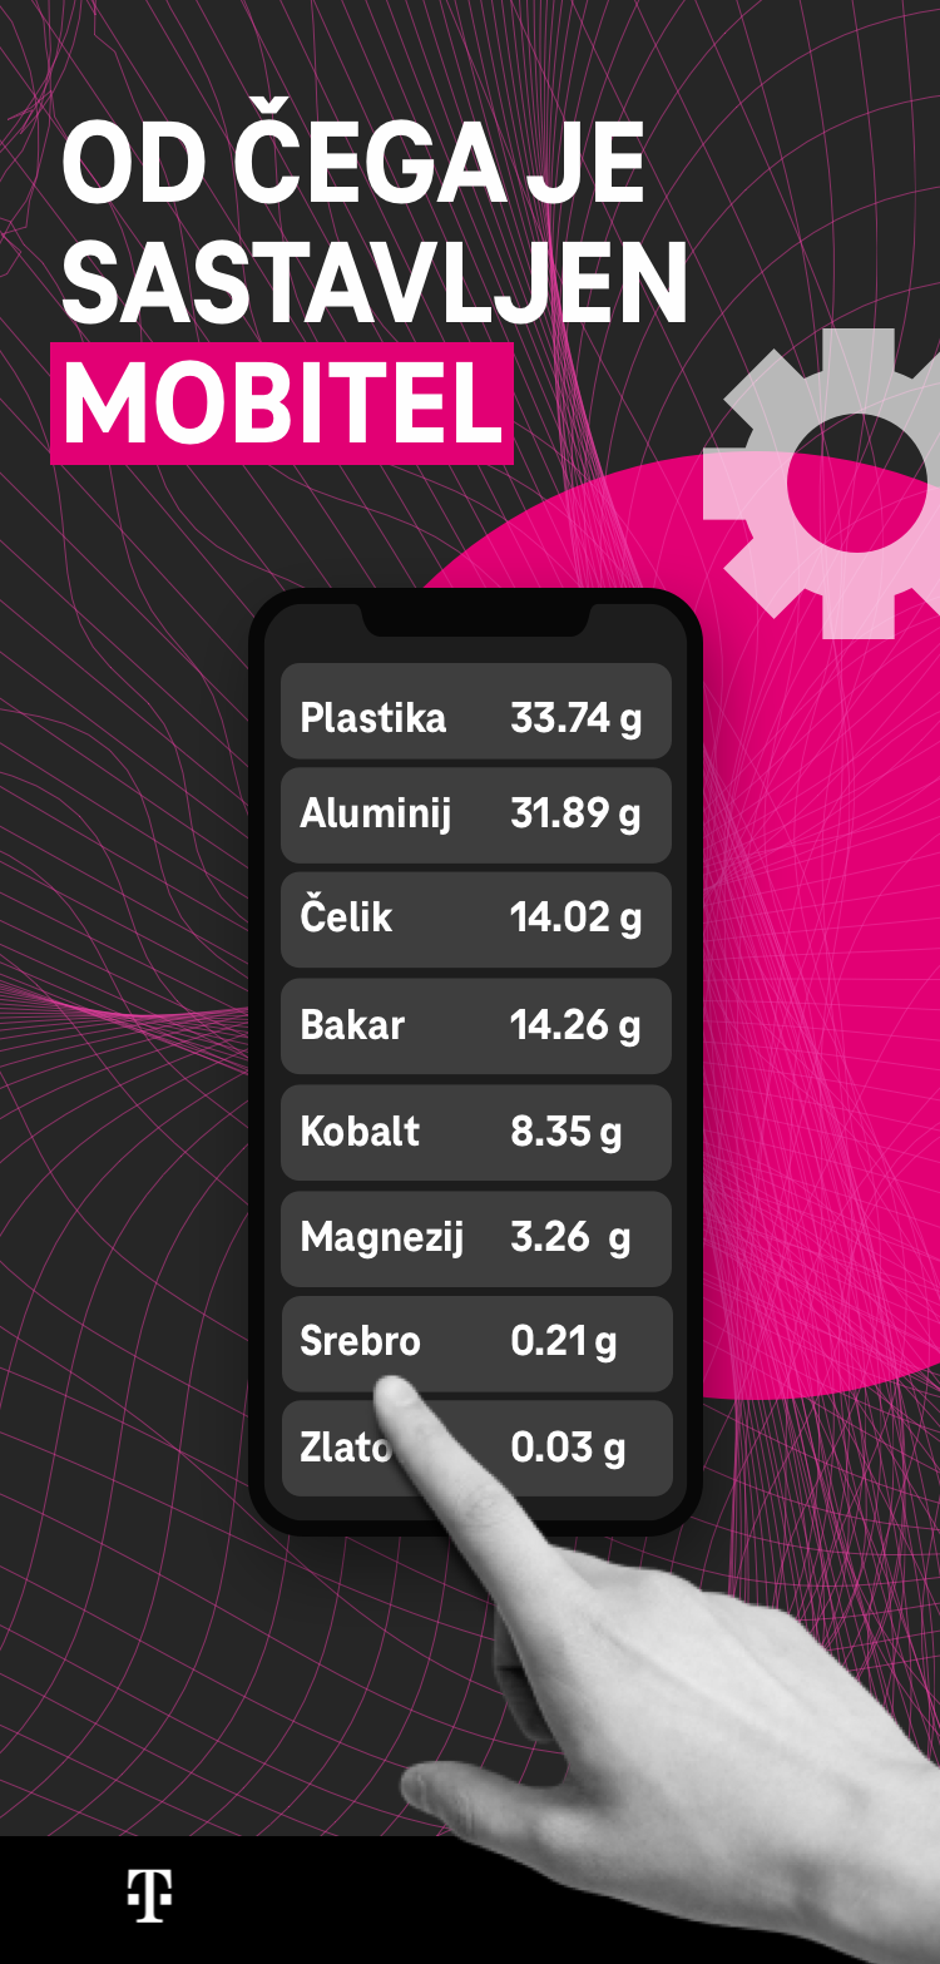 Hrvatski Telekom